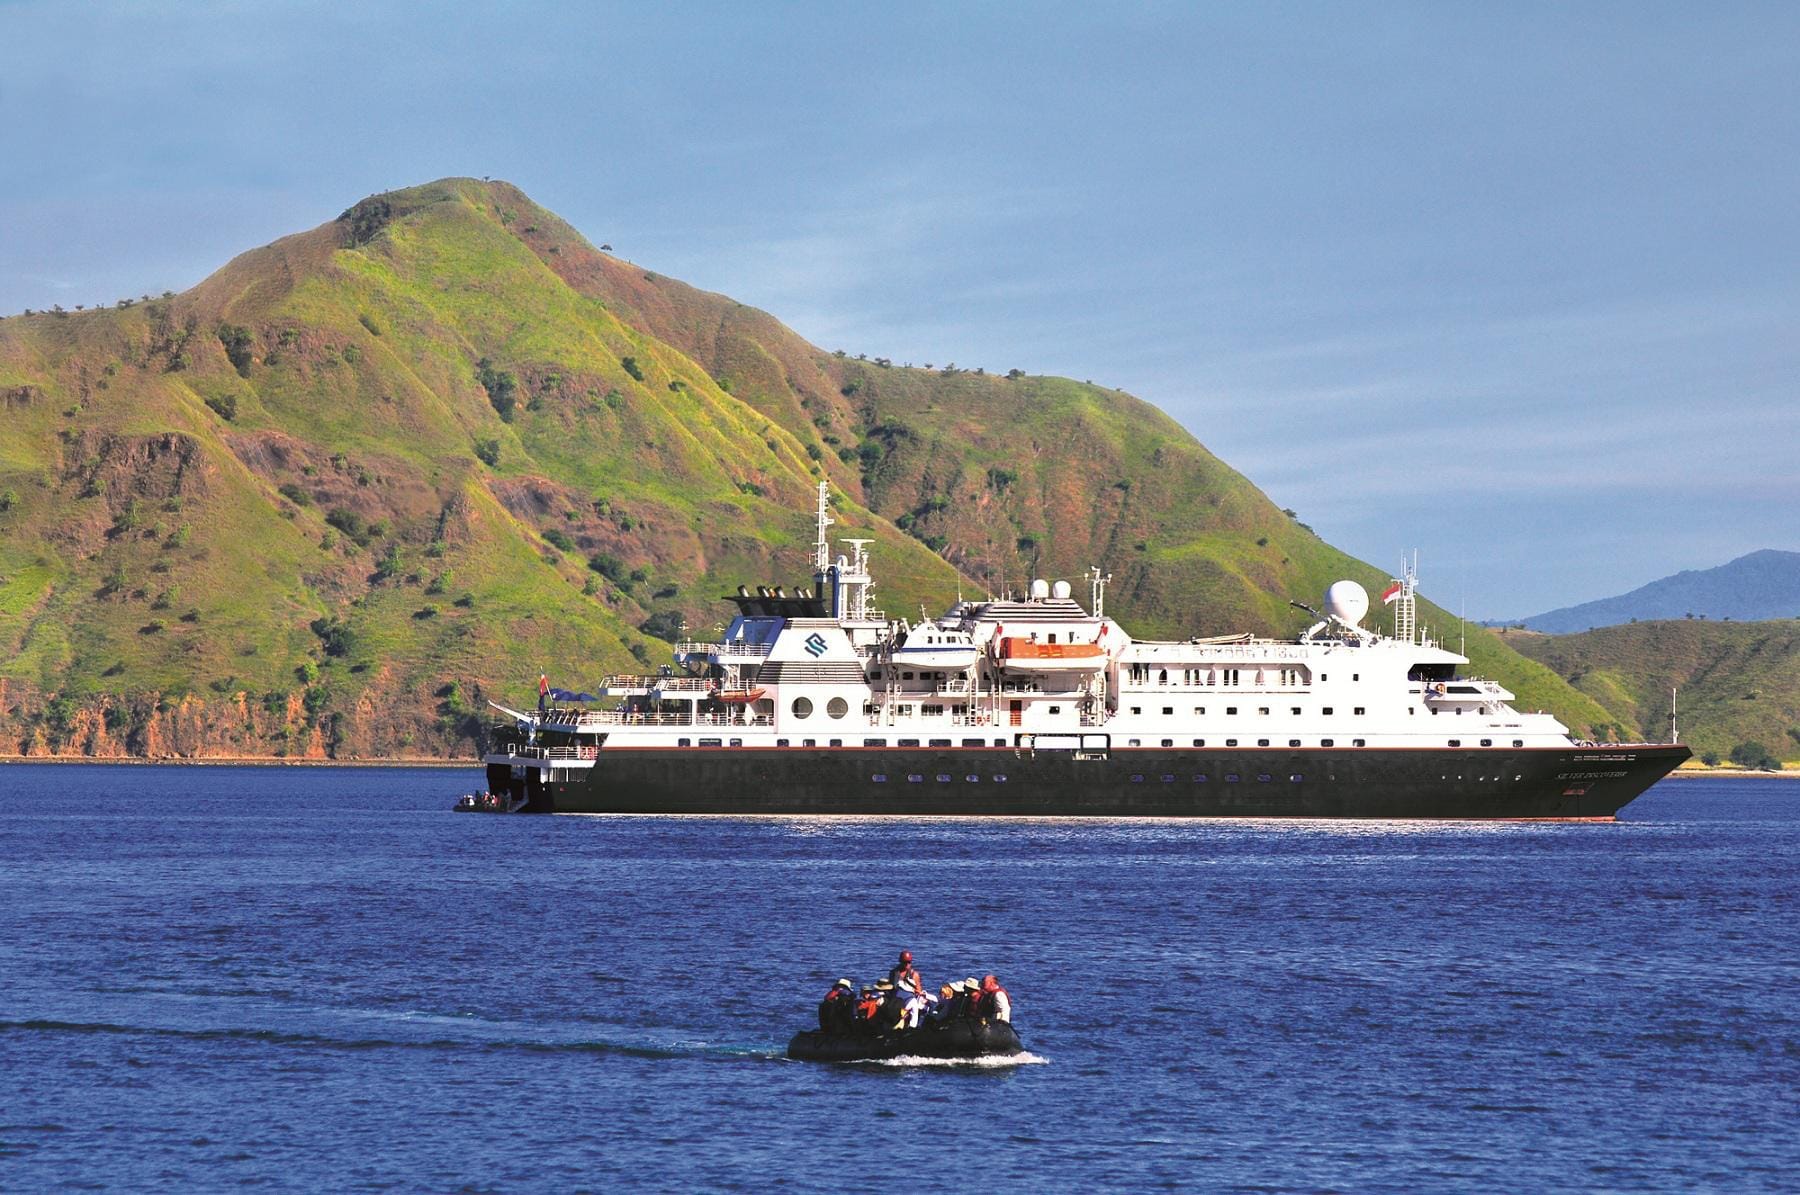 Das Expeditionsschiff "Silver Discoverer" von Silversea Cruises beispielsweise bietet maximal 120 Gästen Platz und erkundet die entlegenen Inselgruppen des Pazifiks.